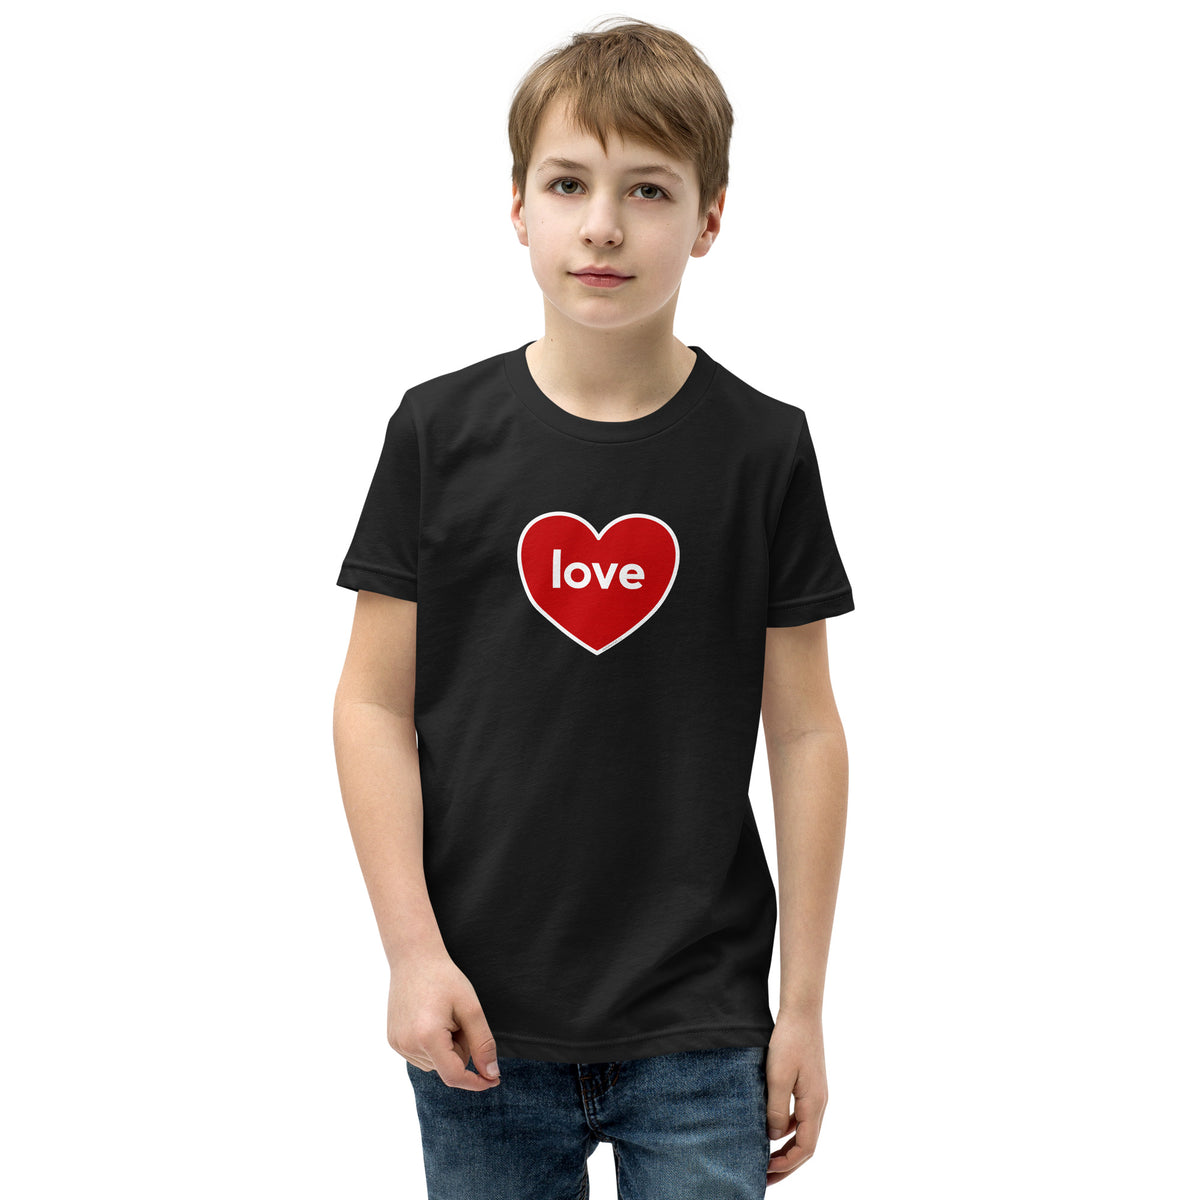 Love Heart Kids Valentine’s Day T-Shirt